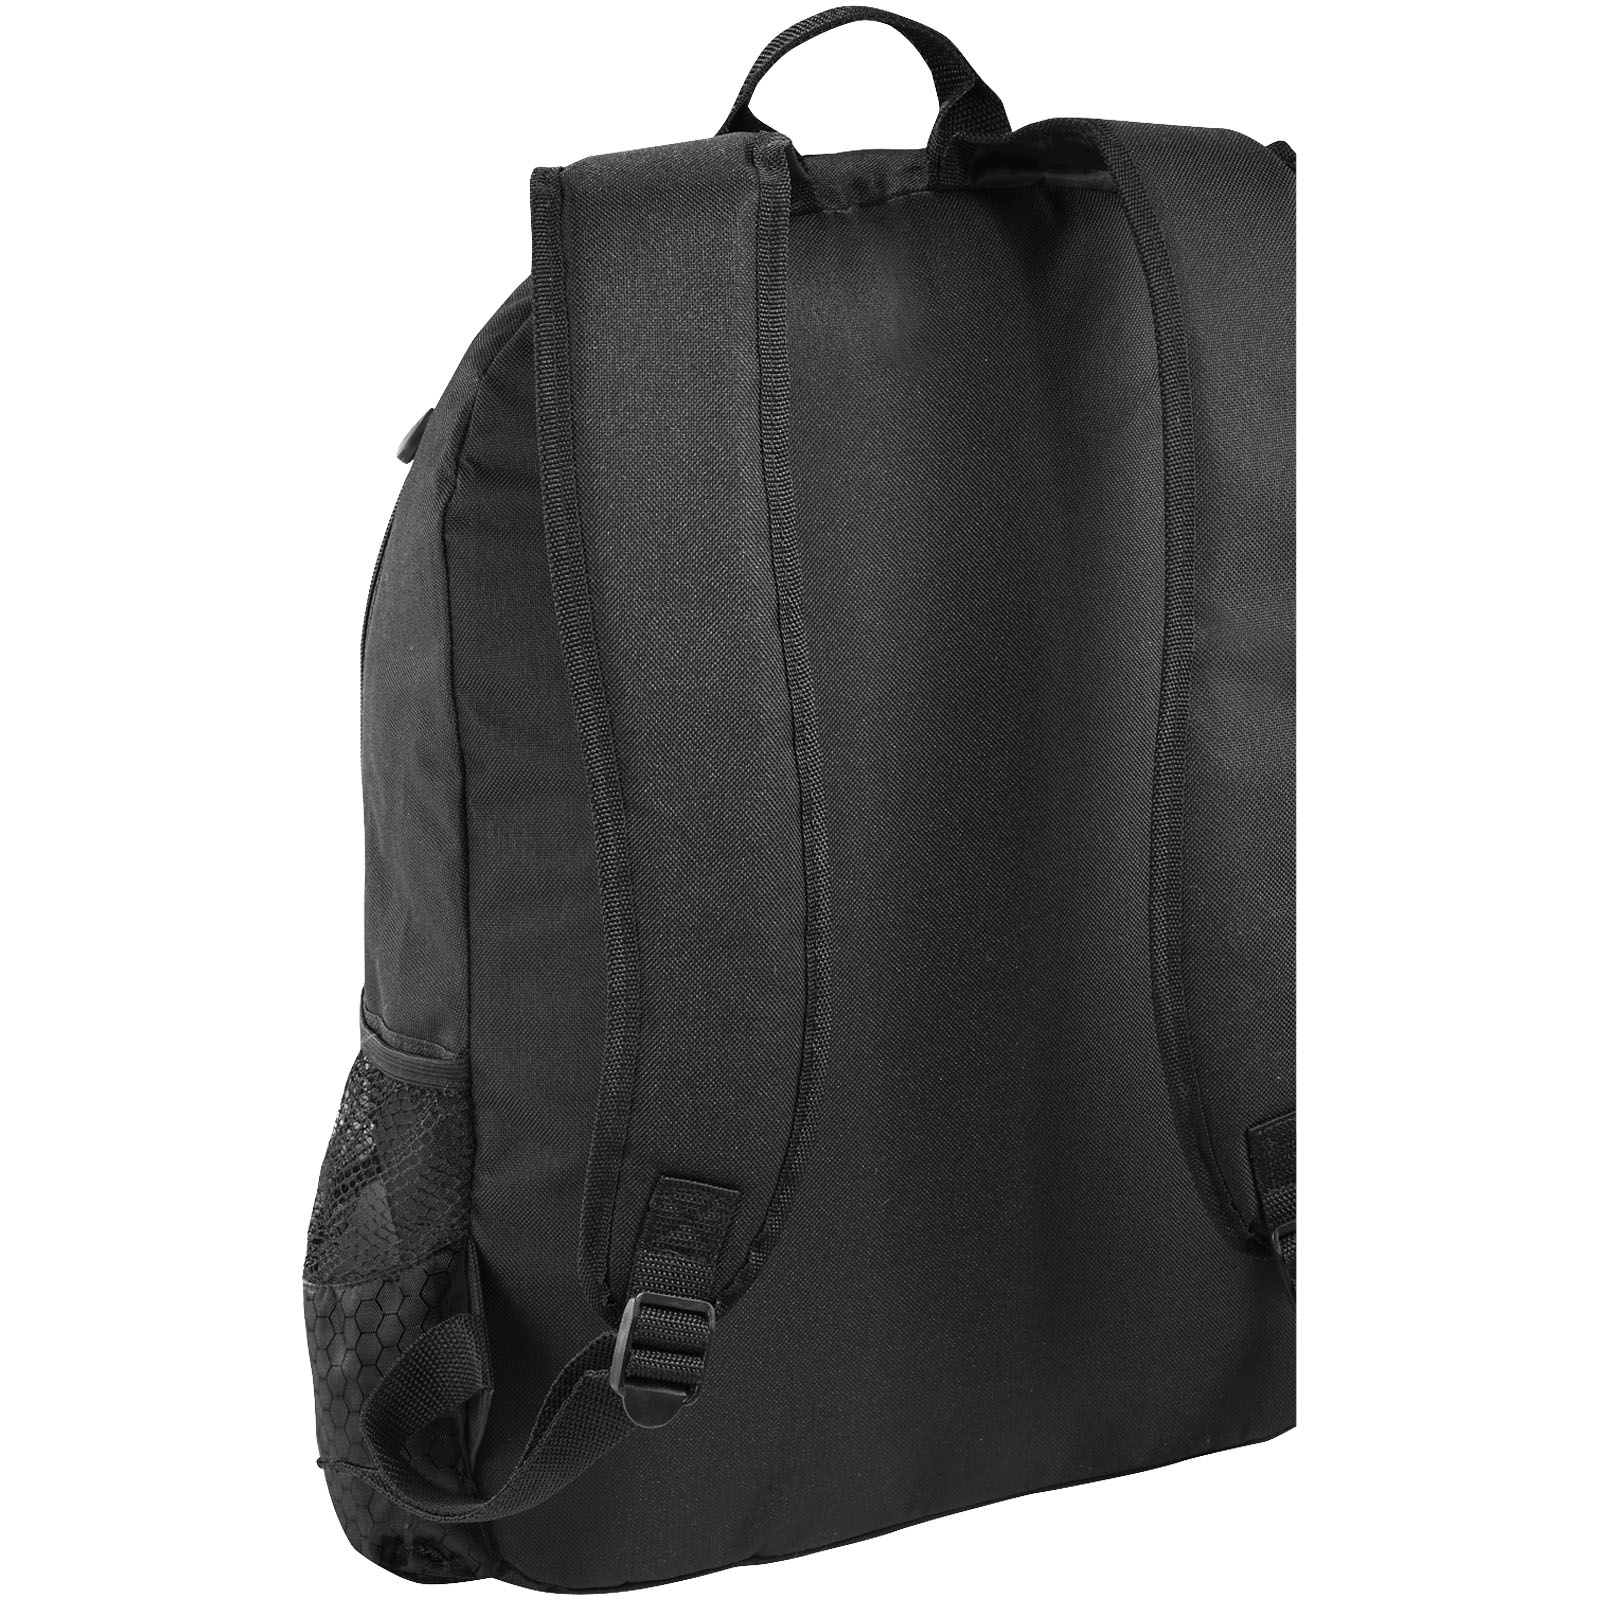 Advertising Laptop Backpacks - Benton 15